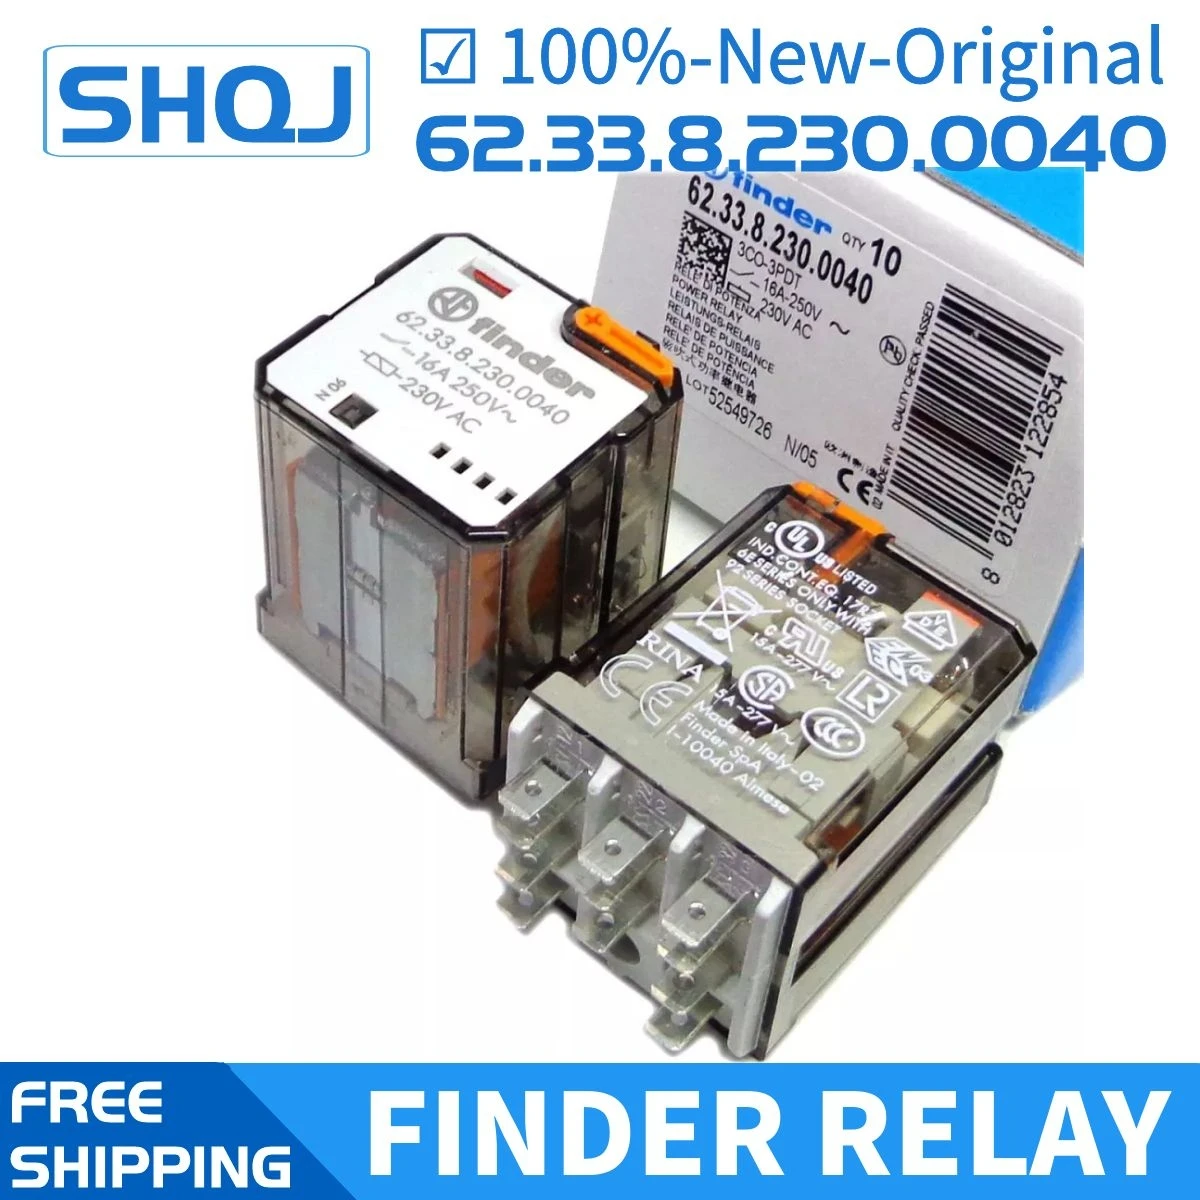 

finder relay 62.33.9.024.0040 24VDC 62.33.8.230.0040 230VAC 92.03 16A 11pin 100%-new-original